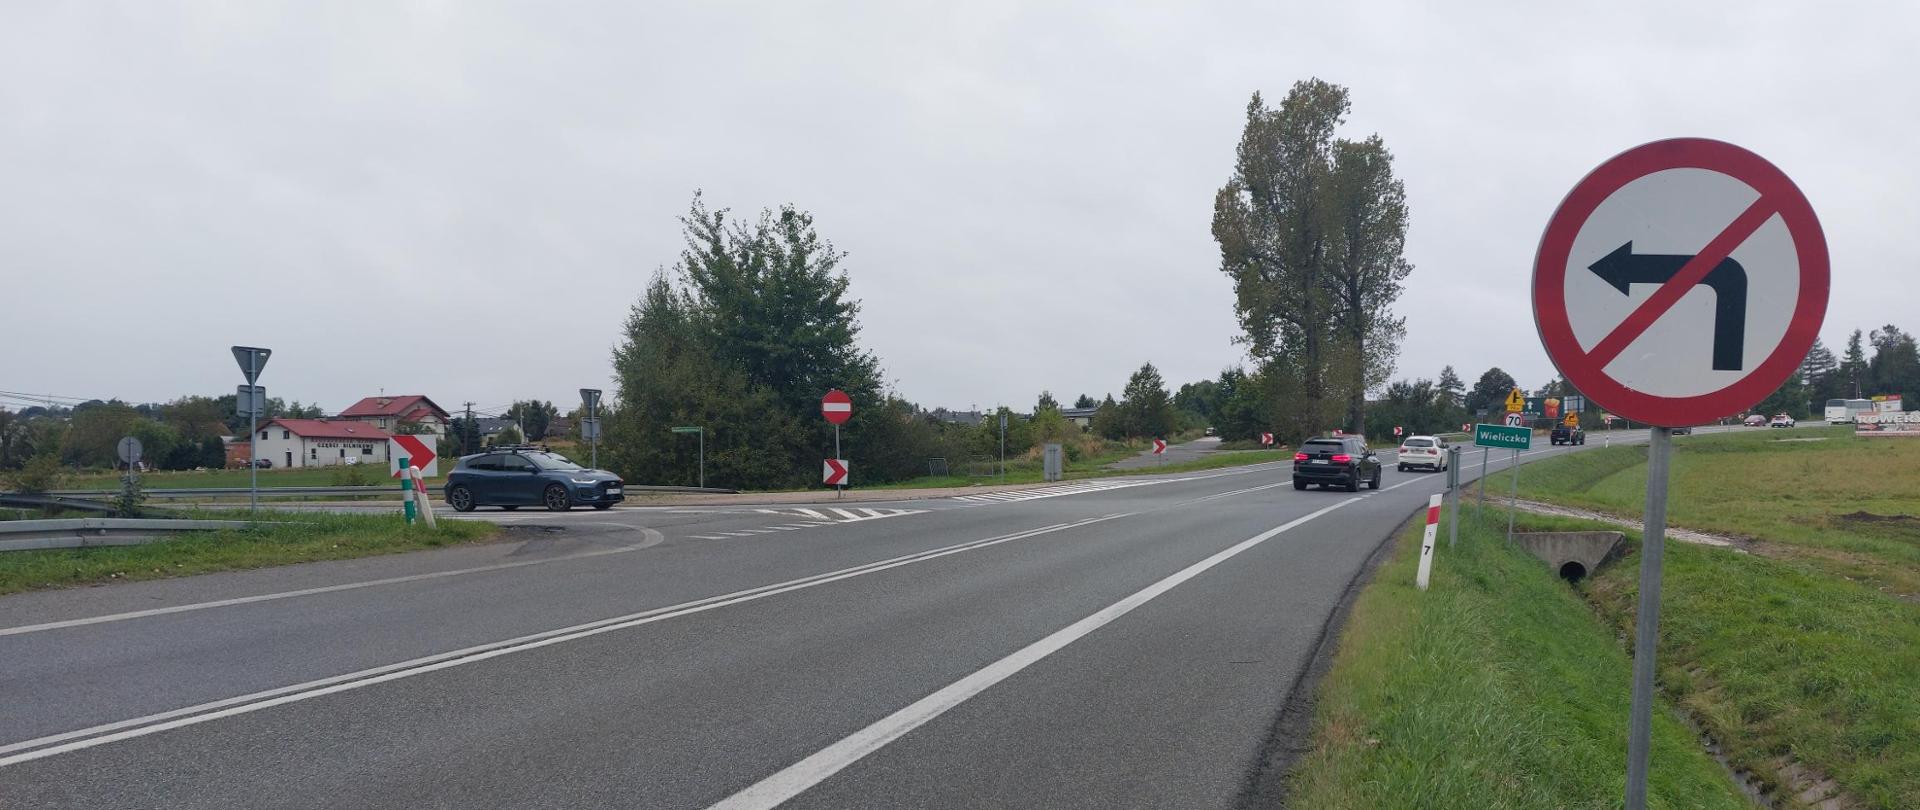 Zdjęcie przedstawia skrzyżowanie. Na pierwszym planie po prawej stronie znajduje się znak z zakazem skrętu w lewo. Widać tablicę z nazwą miejscowości - Wieliczka